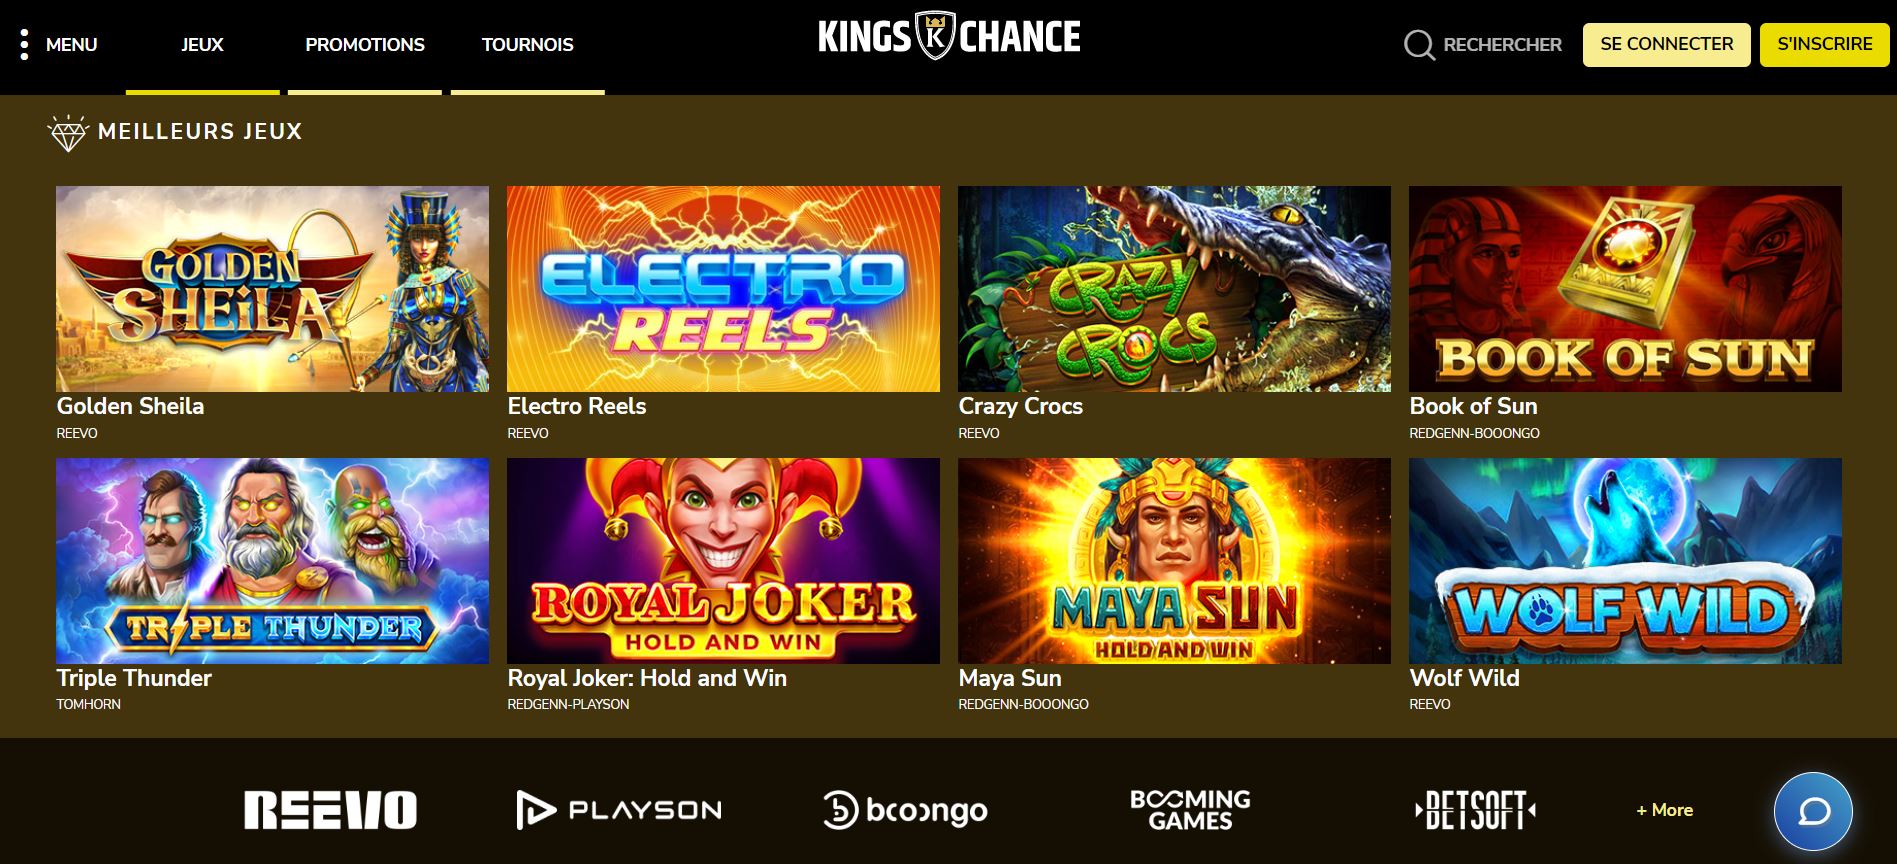 Kings Chance - Jeux - Casino en ligne argent réel